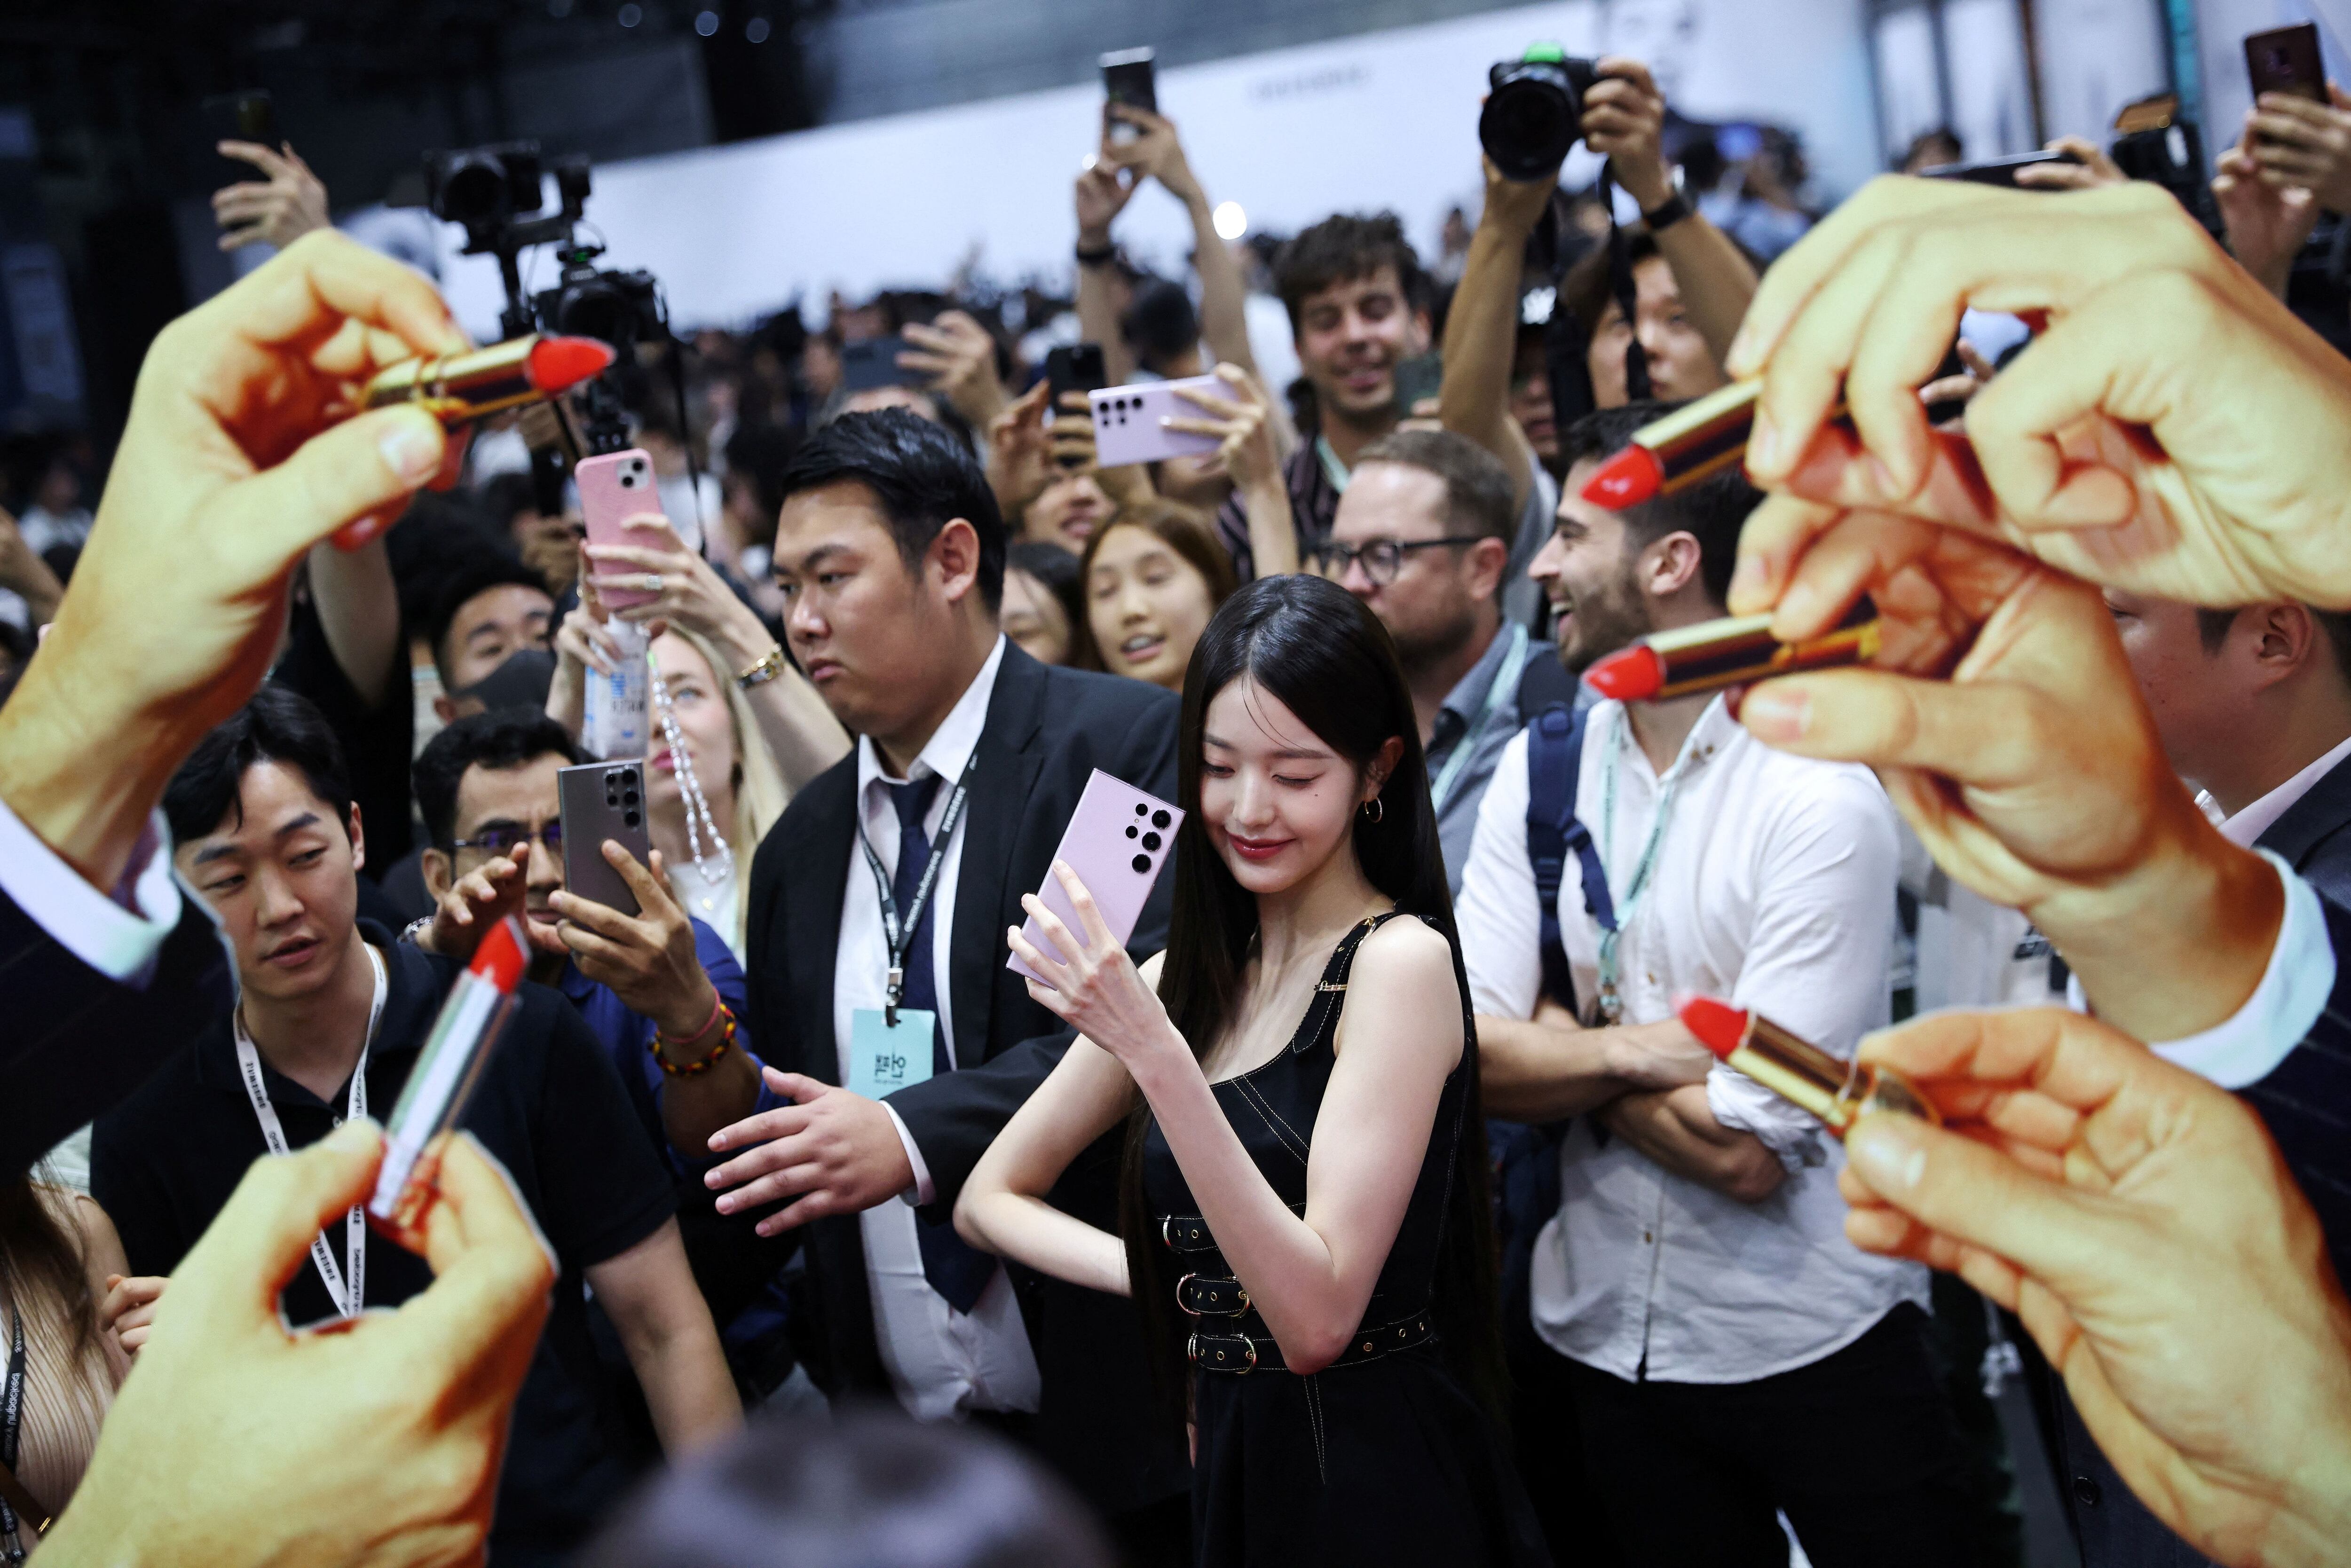 La presentación de estrellas de la cultura pop coreana fue uno de los atractivos del reciente Samsung Unpacked donde Roh presentó los nuevos modelos plegables
REUTERS/Kim Hong-Ji